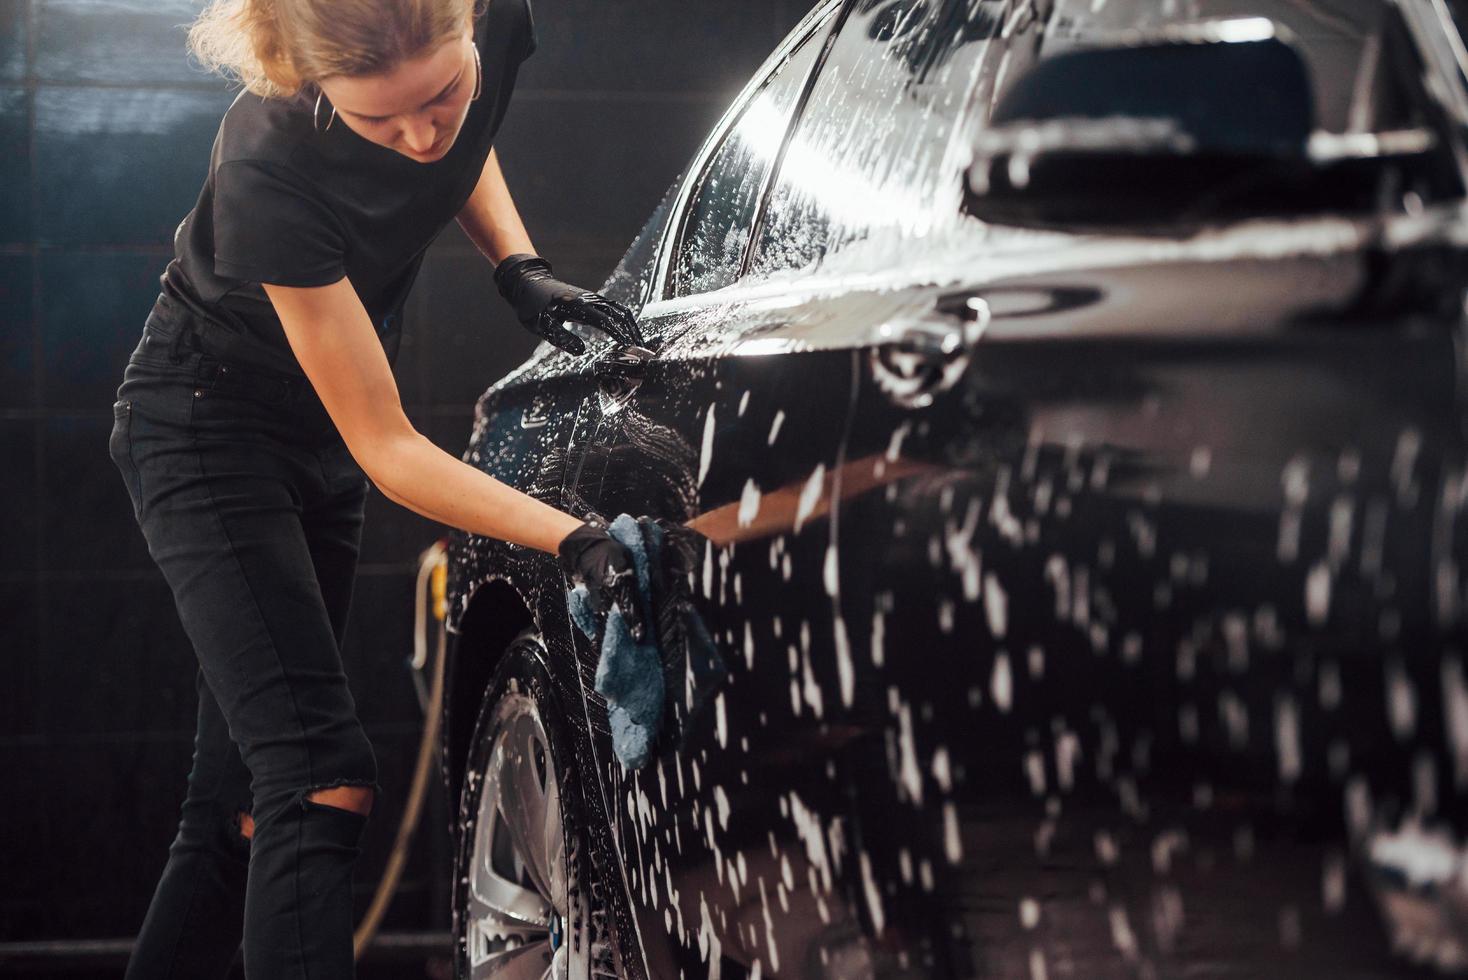 limpa veículo que está em sabão branco. automóvel preto moderno é limpo por uma mulher dentro da estação de lavagem de carros foto